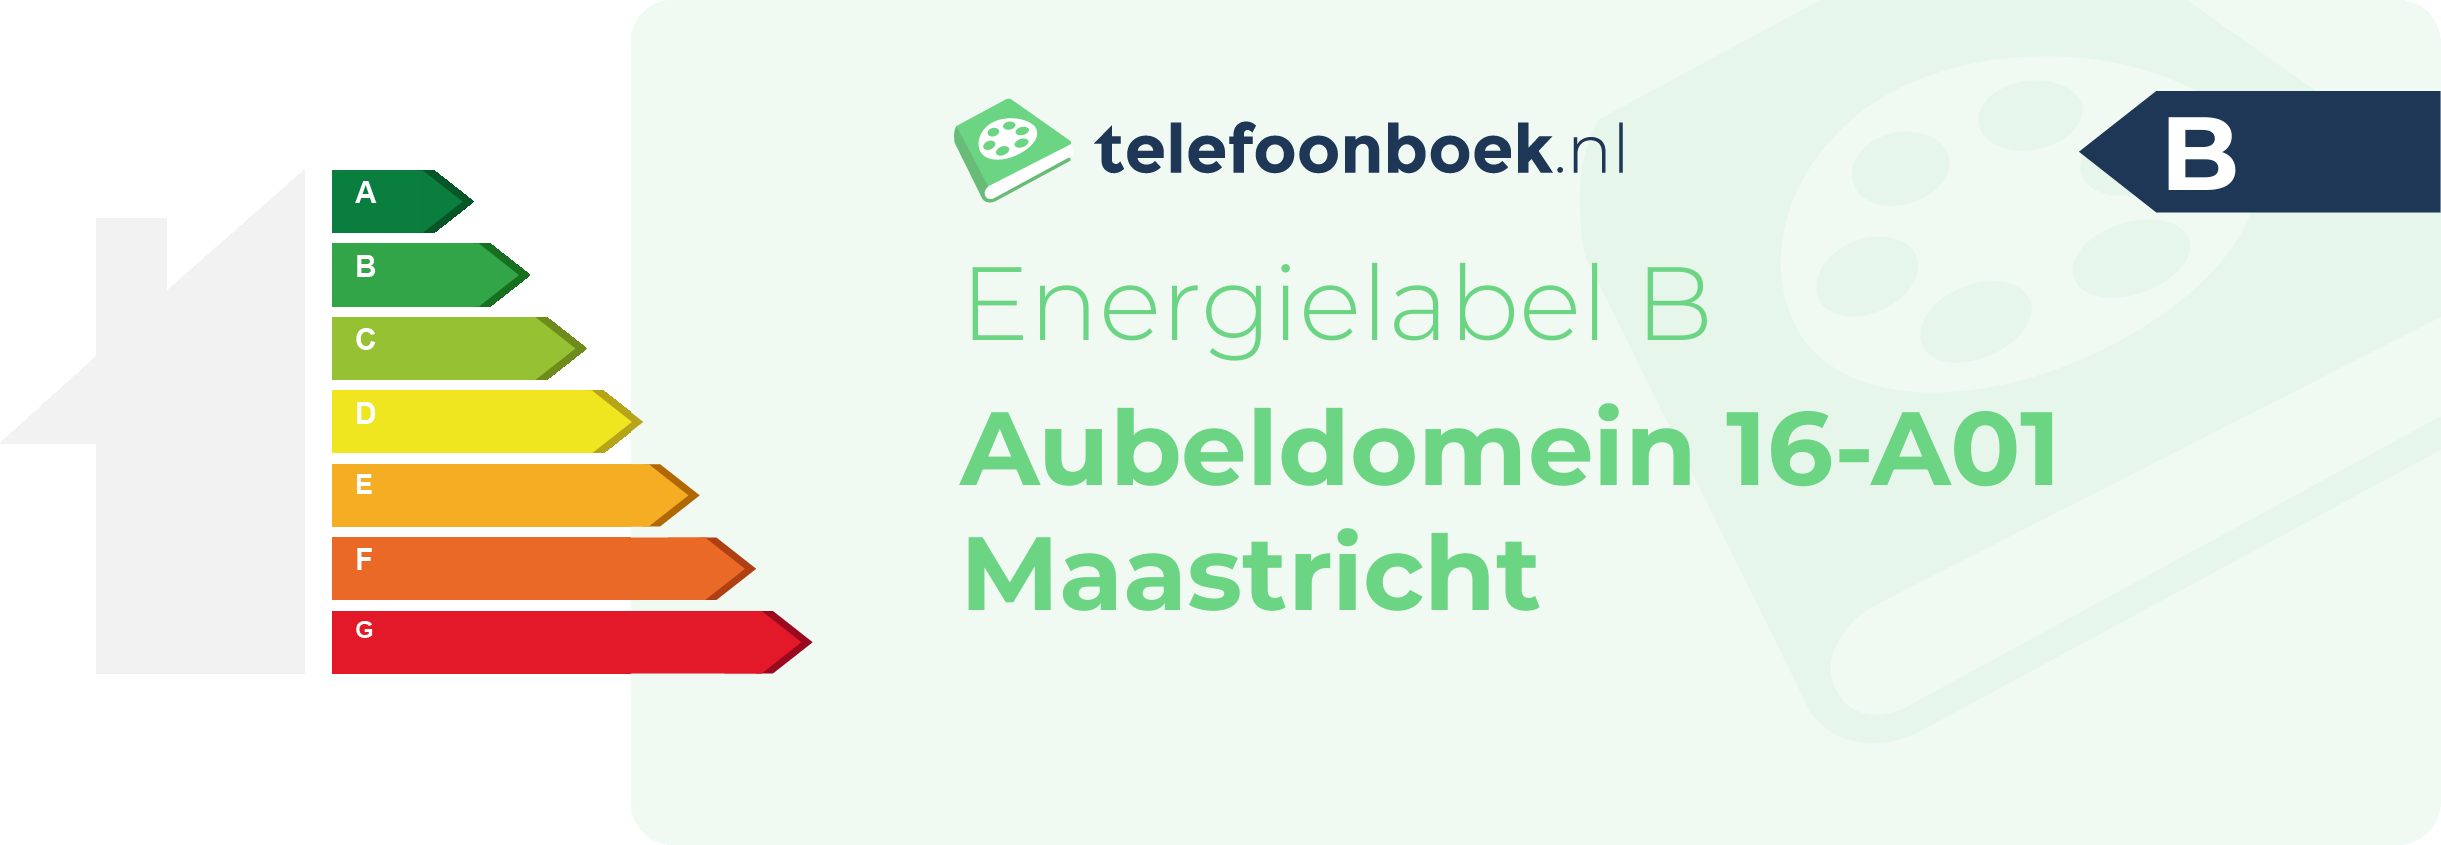 Energielabel Aubeldomein 16-A01 Maastricht